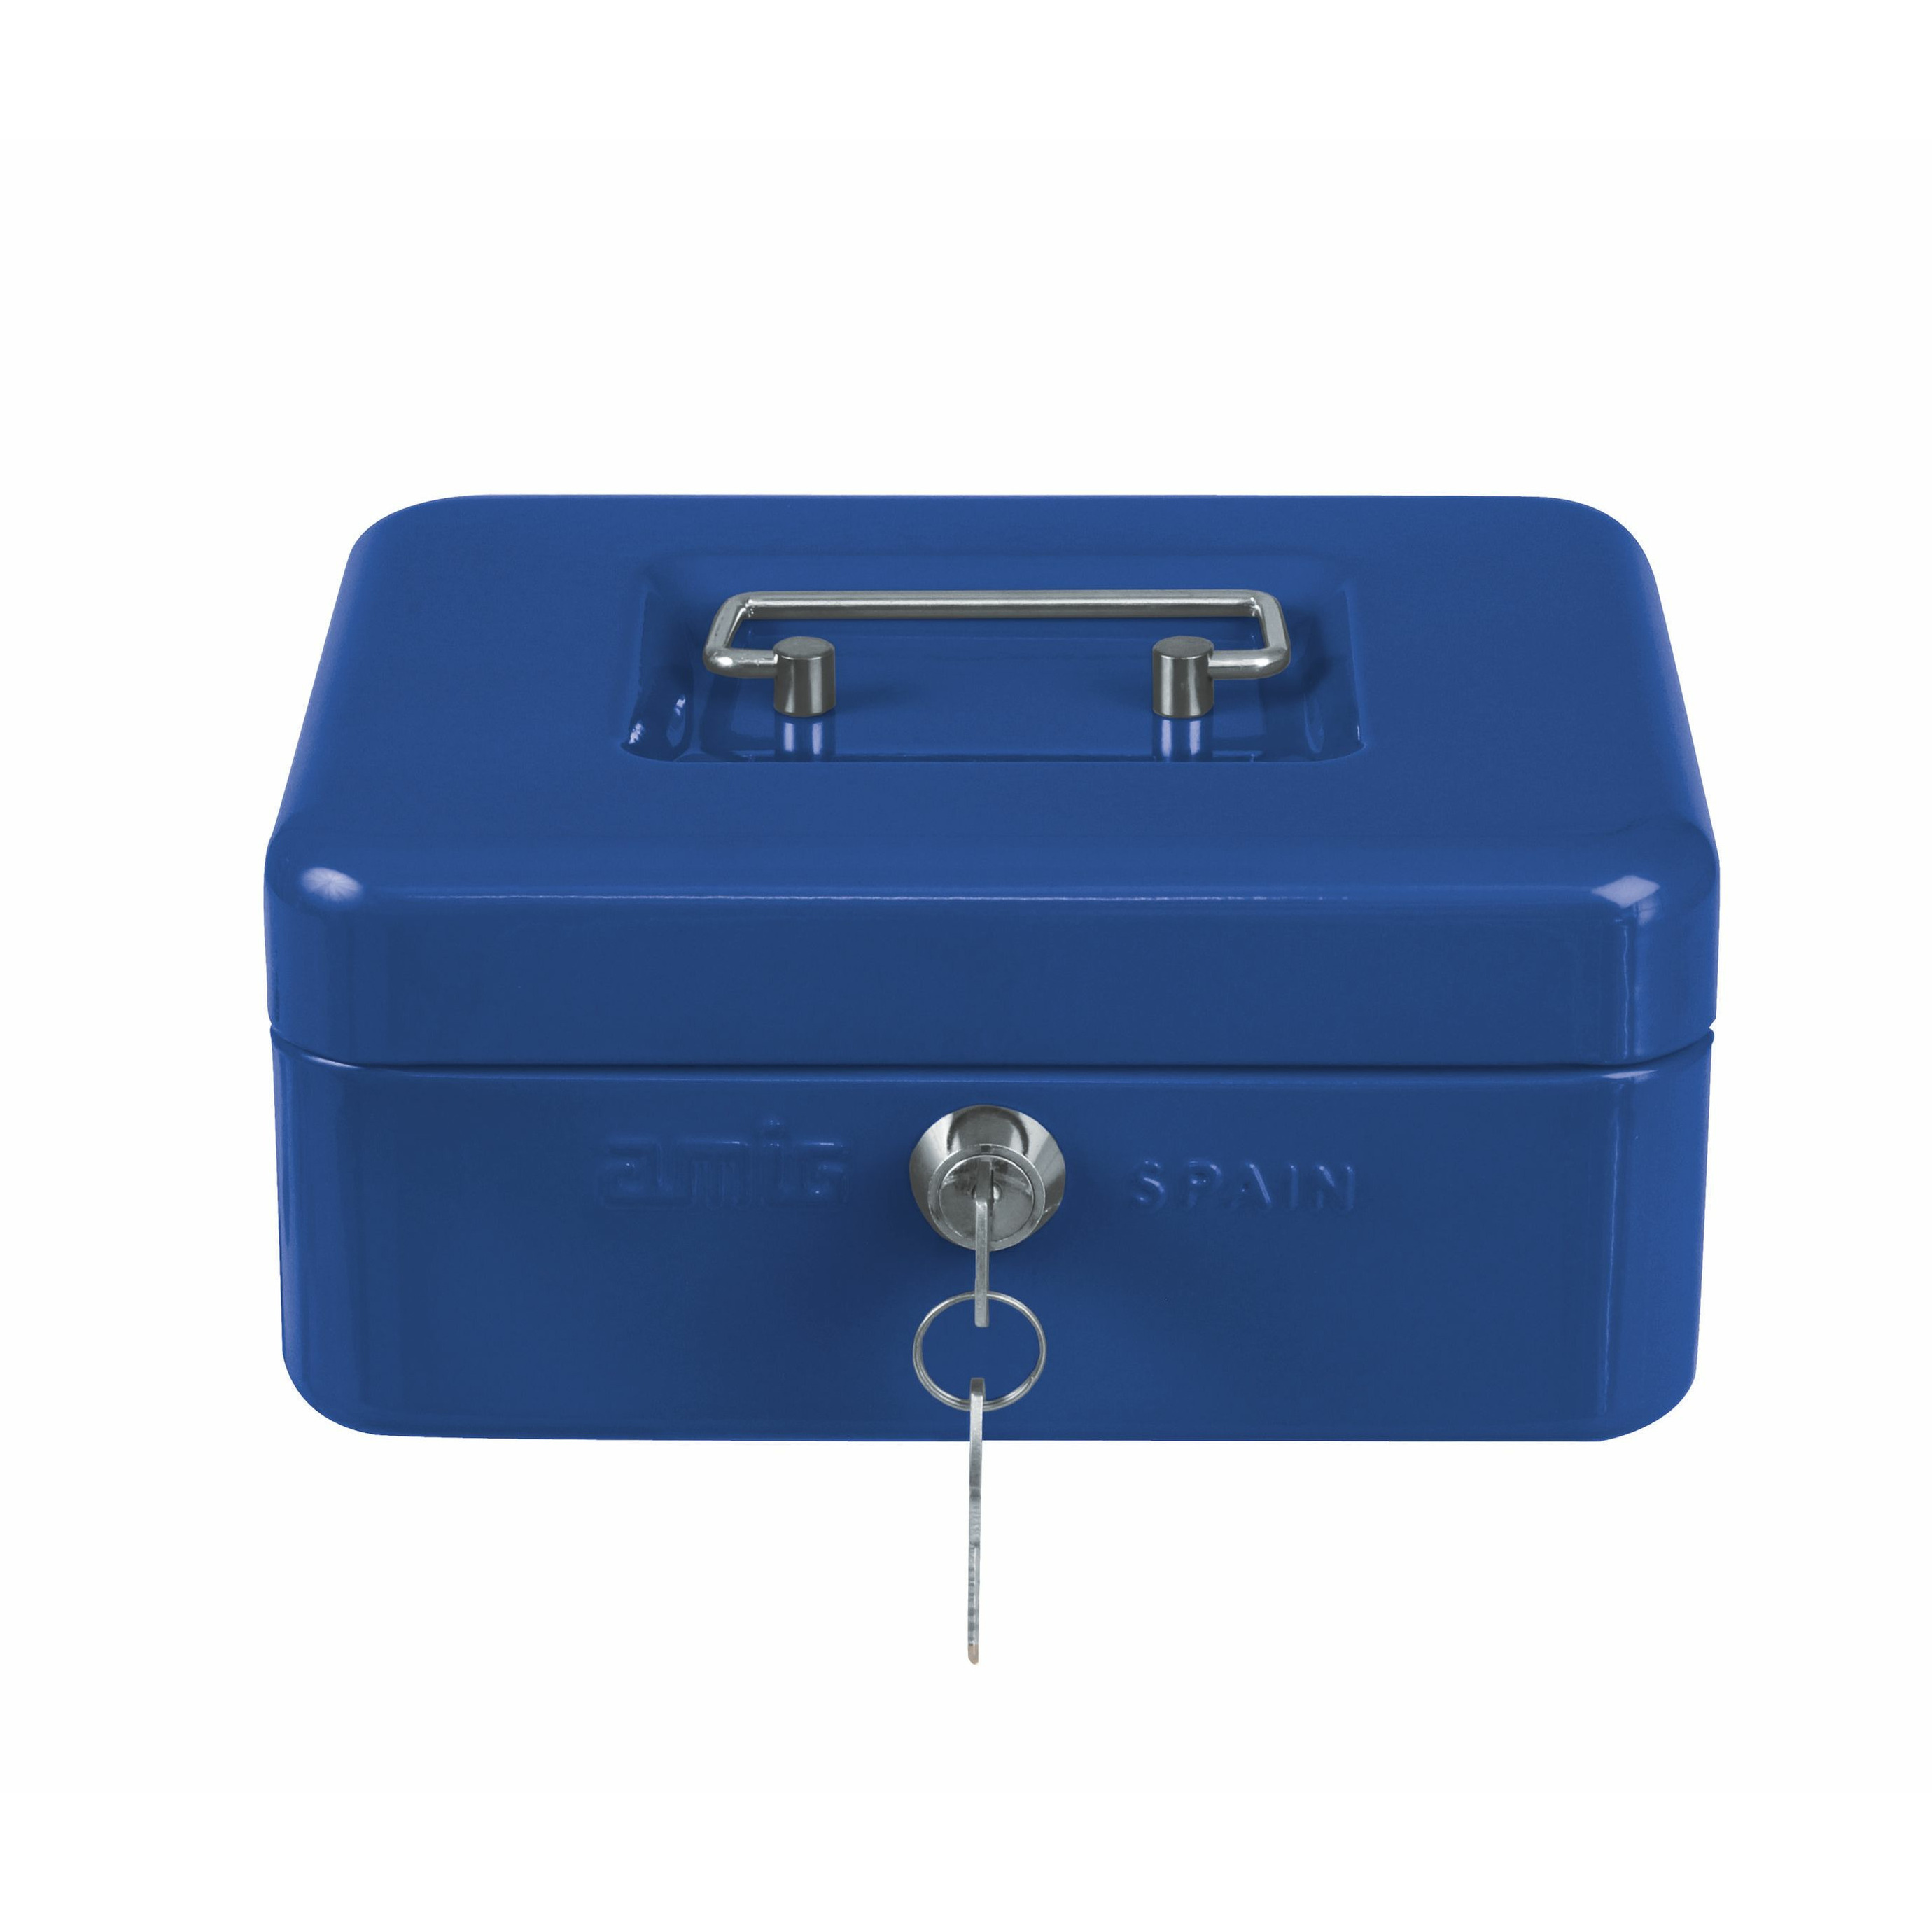 AMIG Geldkistje met 2 sleutels blauw staal 15 x 11 x 7 cm inbraakbeveiliging